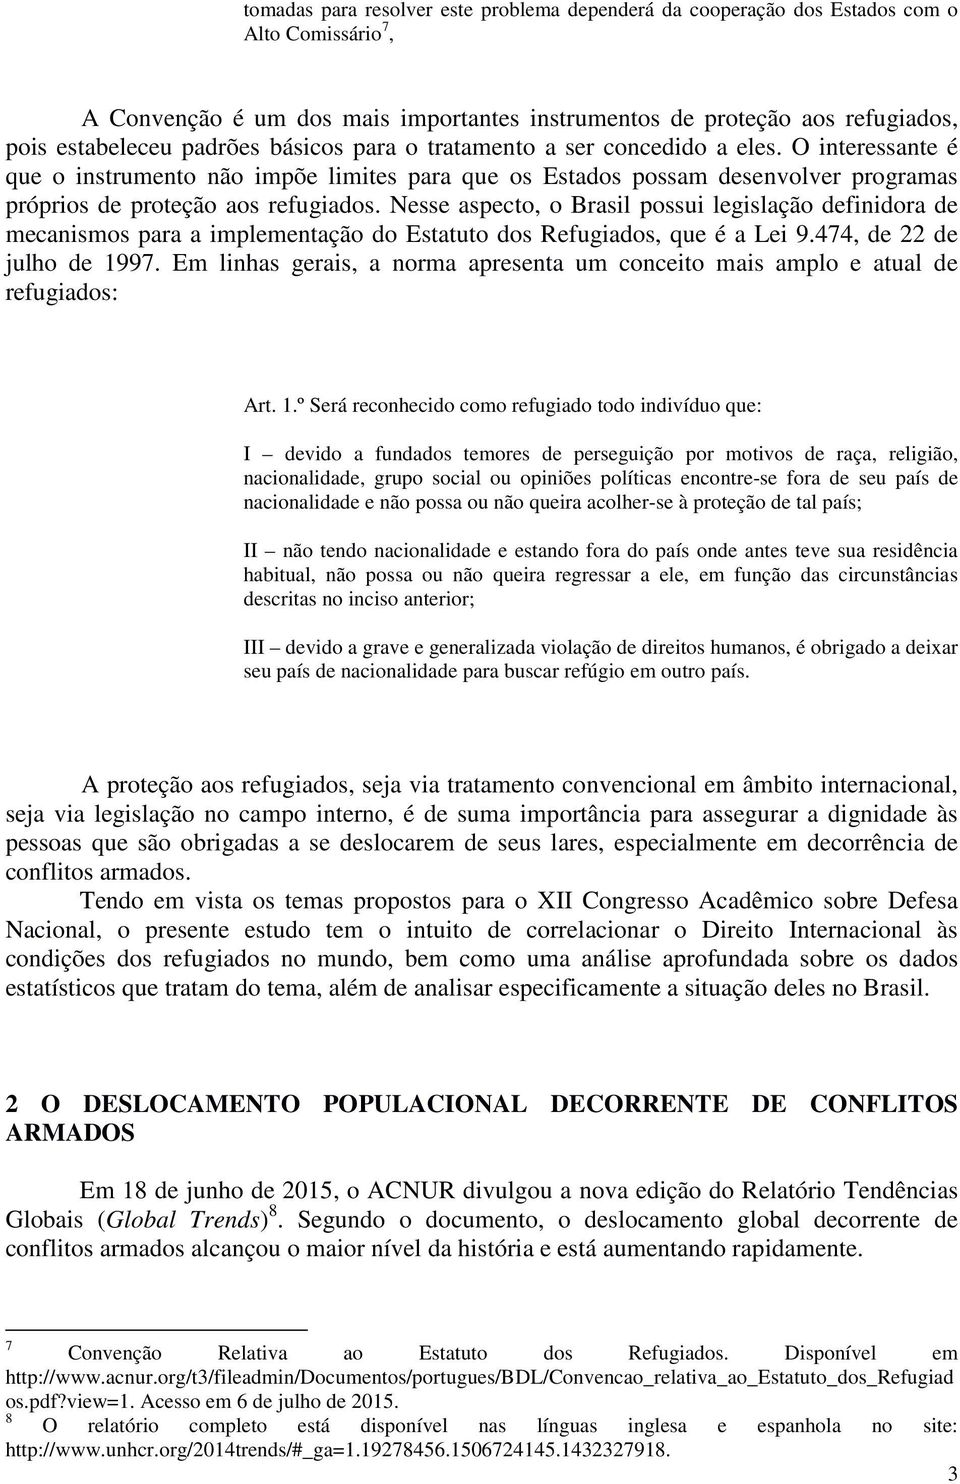 Nesse aspecto, o Brasil possui legislação definidora de mecanismos para a implementação do Estatuto dos Refugiados, que é a Lei 9.474, de 22 de julho de 1997.